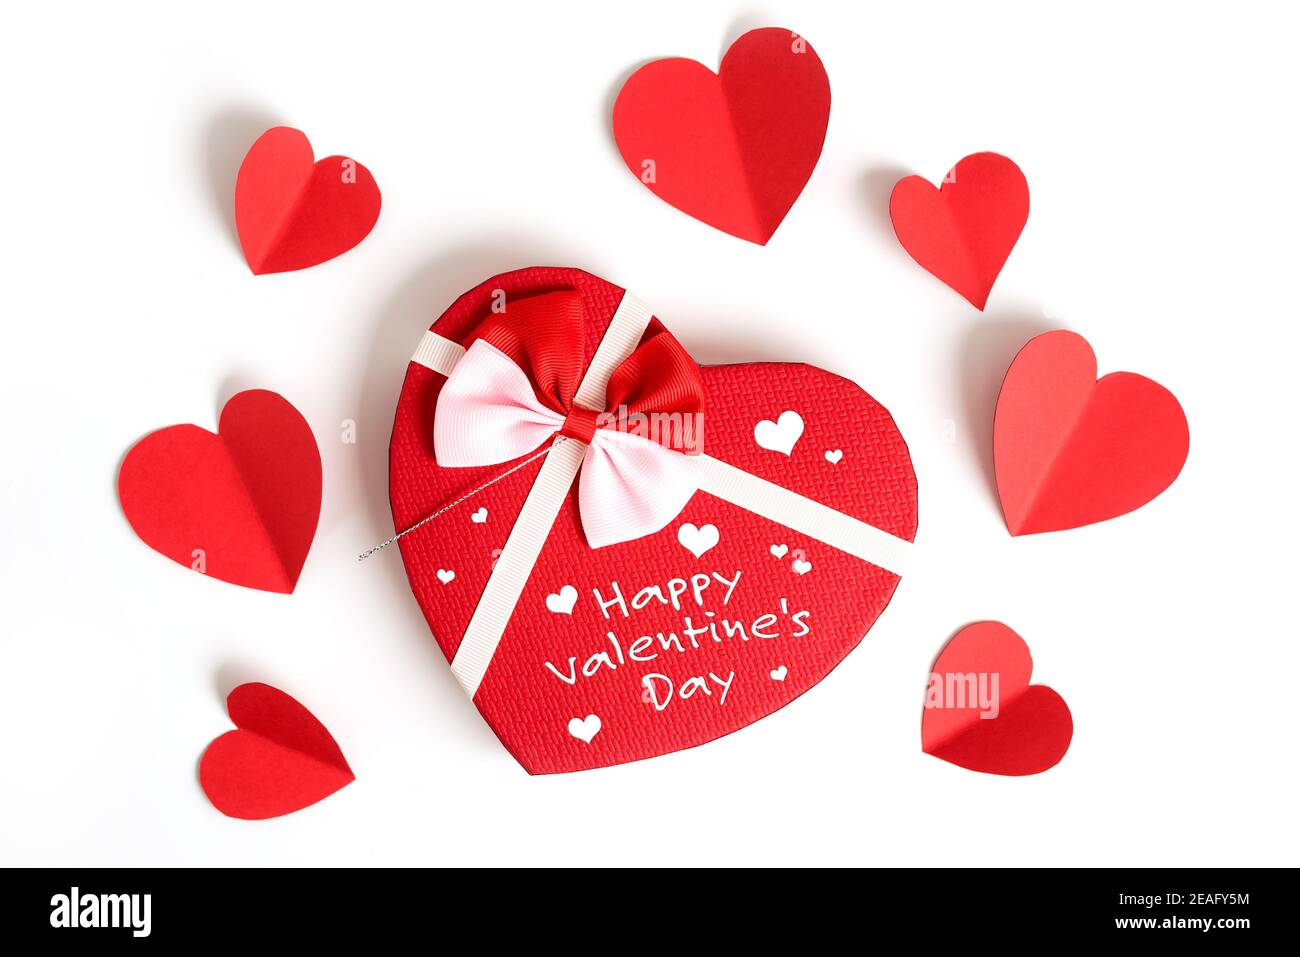 Bonne Saint Valentin, fond de jour de la Saint Valentin avec note écrite, boîte cadeau en forme de coeur avec ruban et petit coeur de papier, sur fond blanc, saint-valentin Banque D'Images